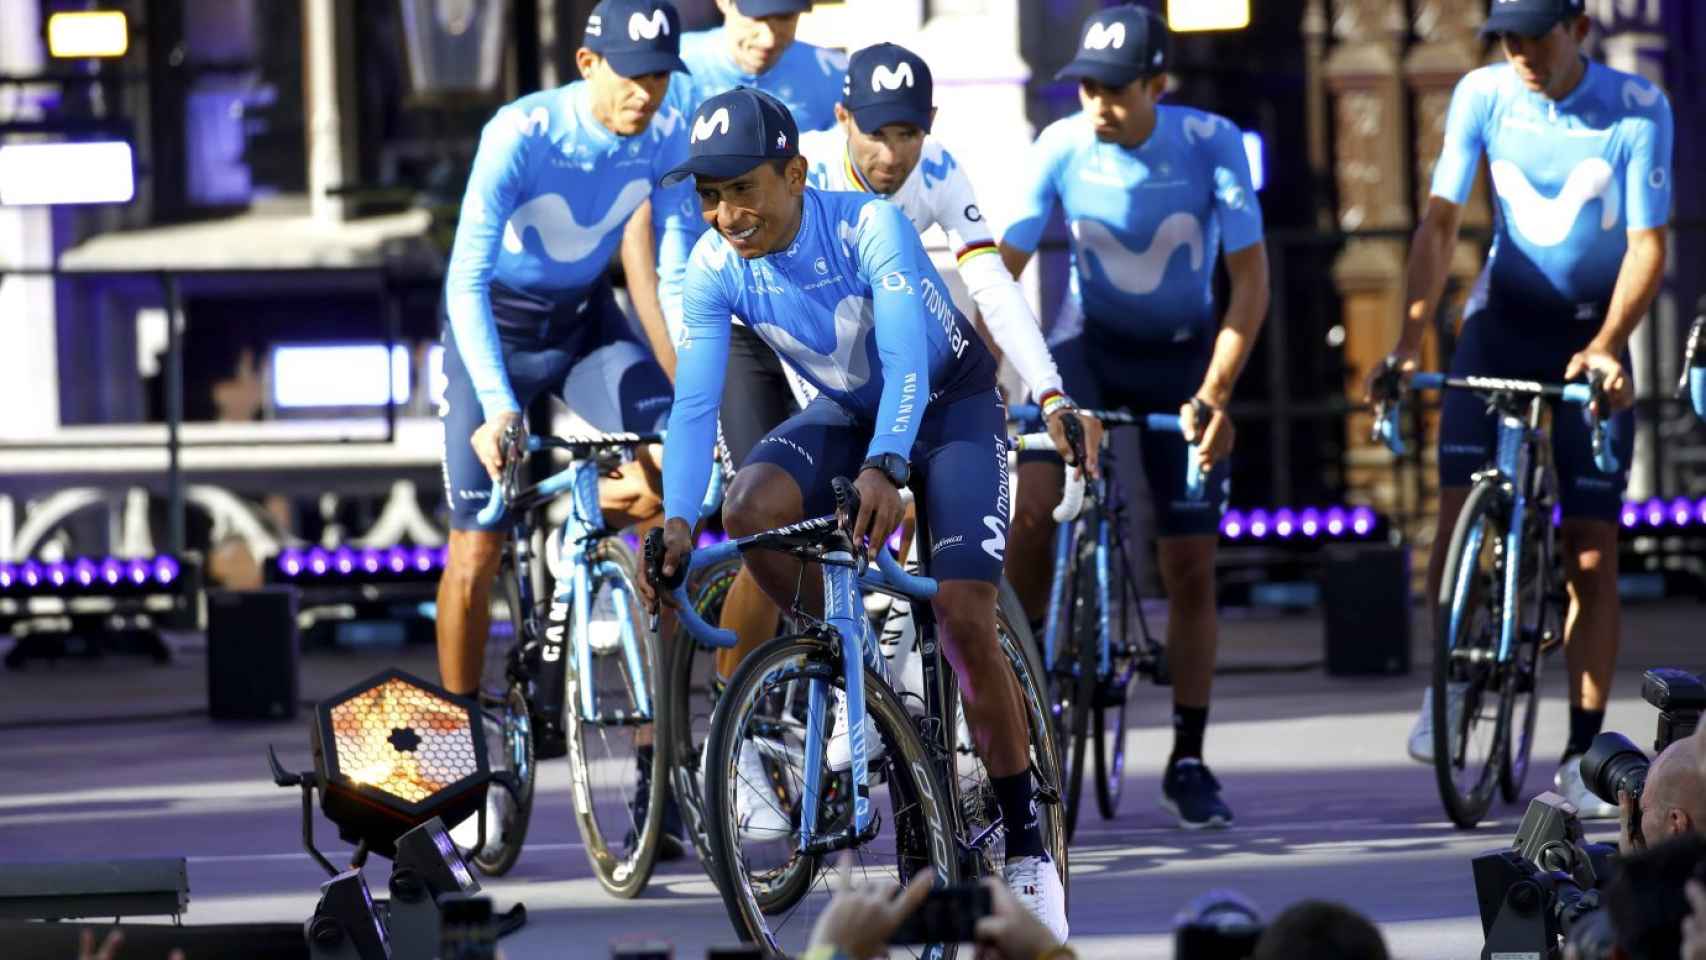 Sumergir Valiente traicionar El Tour de Francia 2019: de la tricefalia de Movistar al reto de Ineos sin  Froome